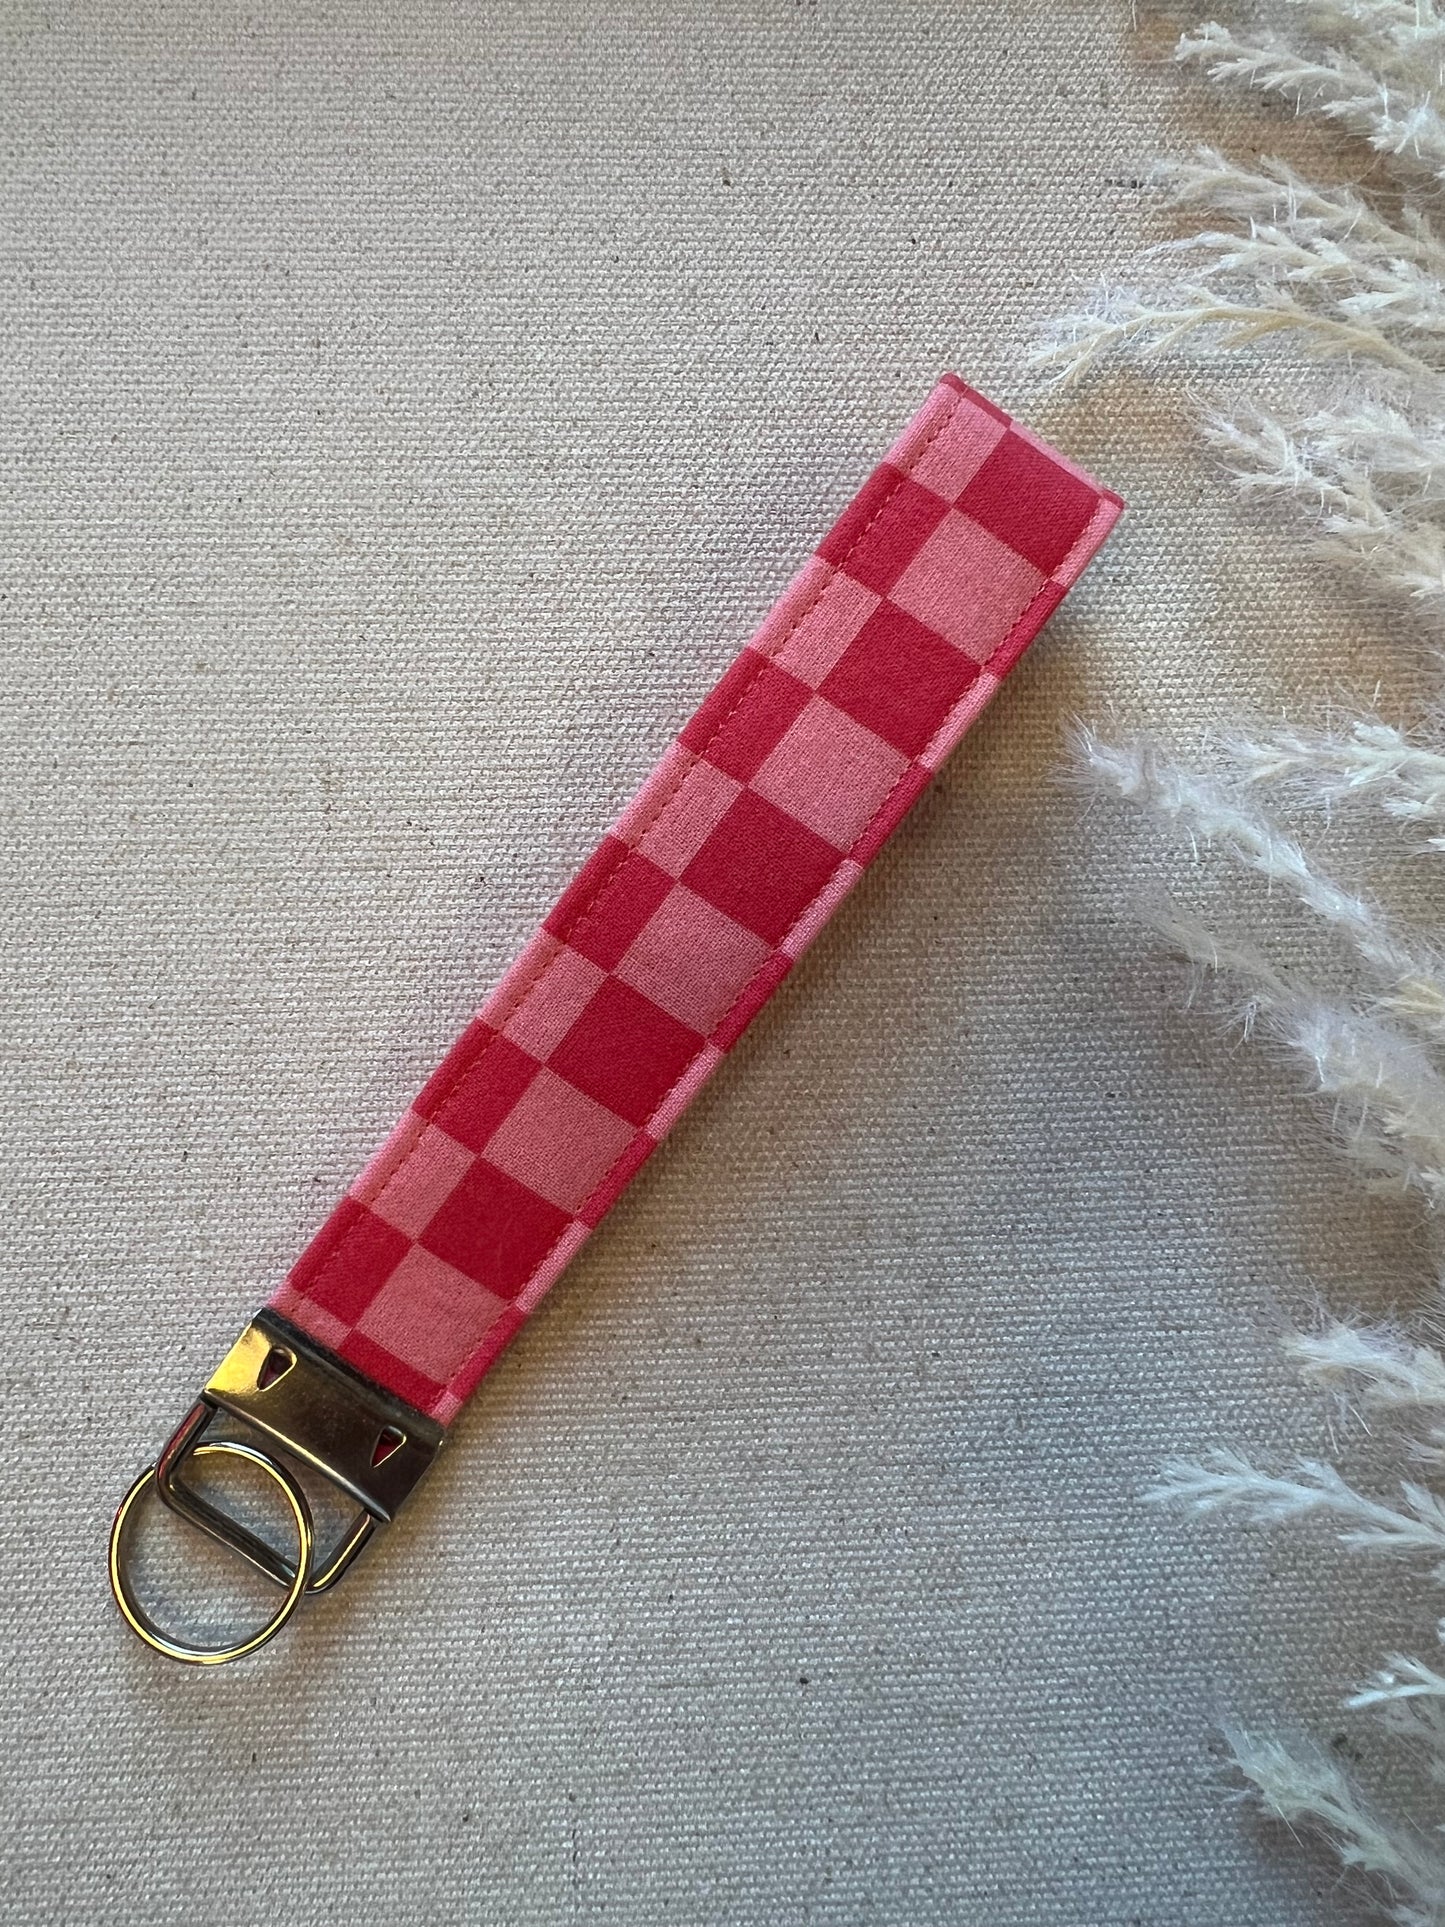 Wrist key chain - coral + pink checker